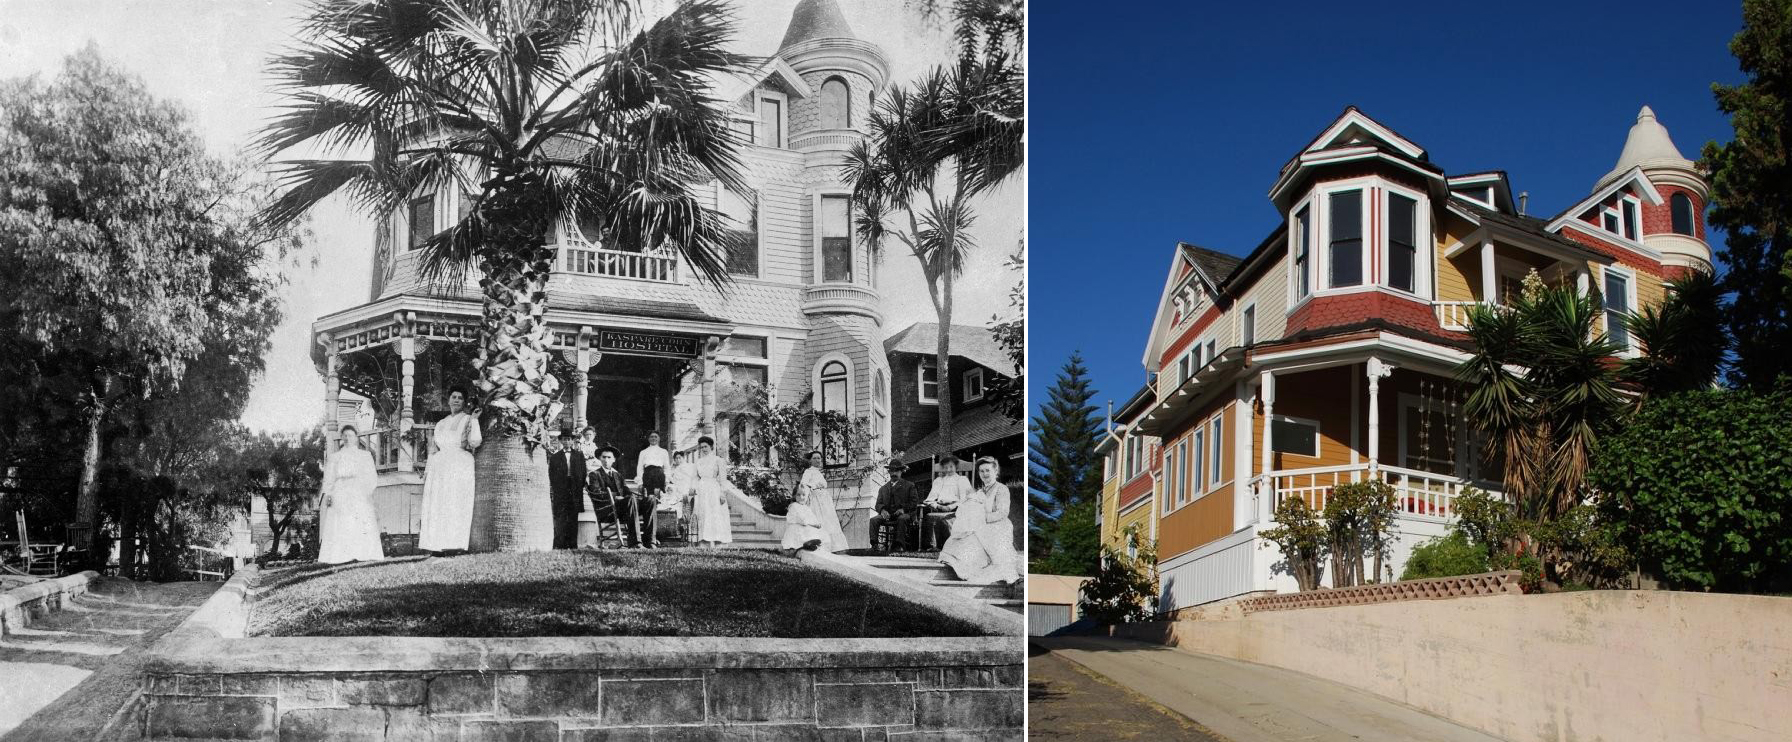 Каркасный дом в Сочи 1887 года тогда и сейчас